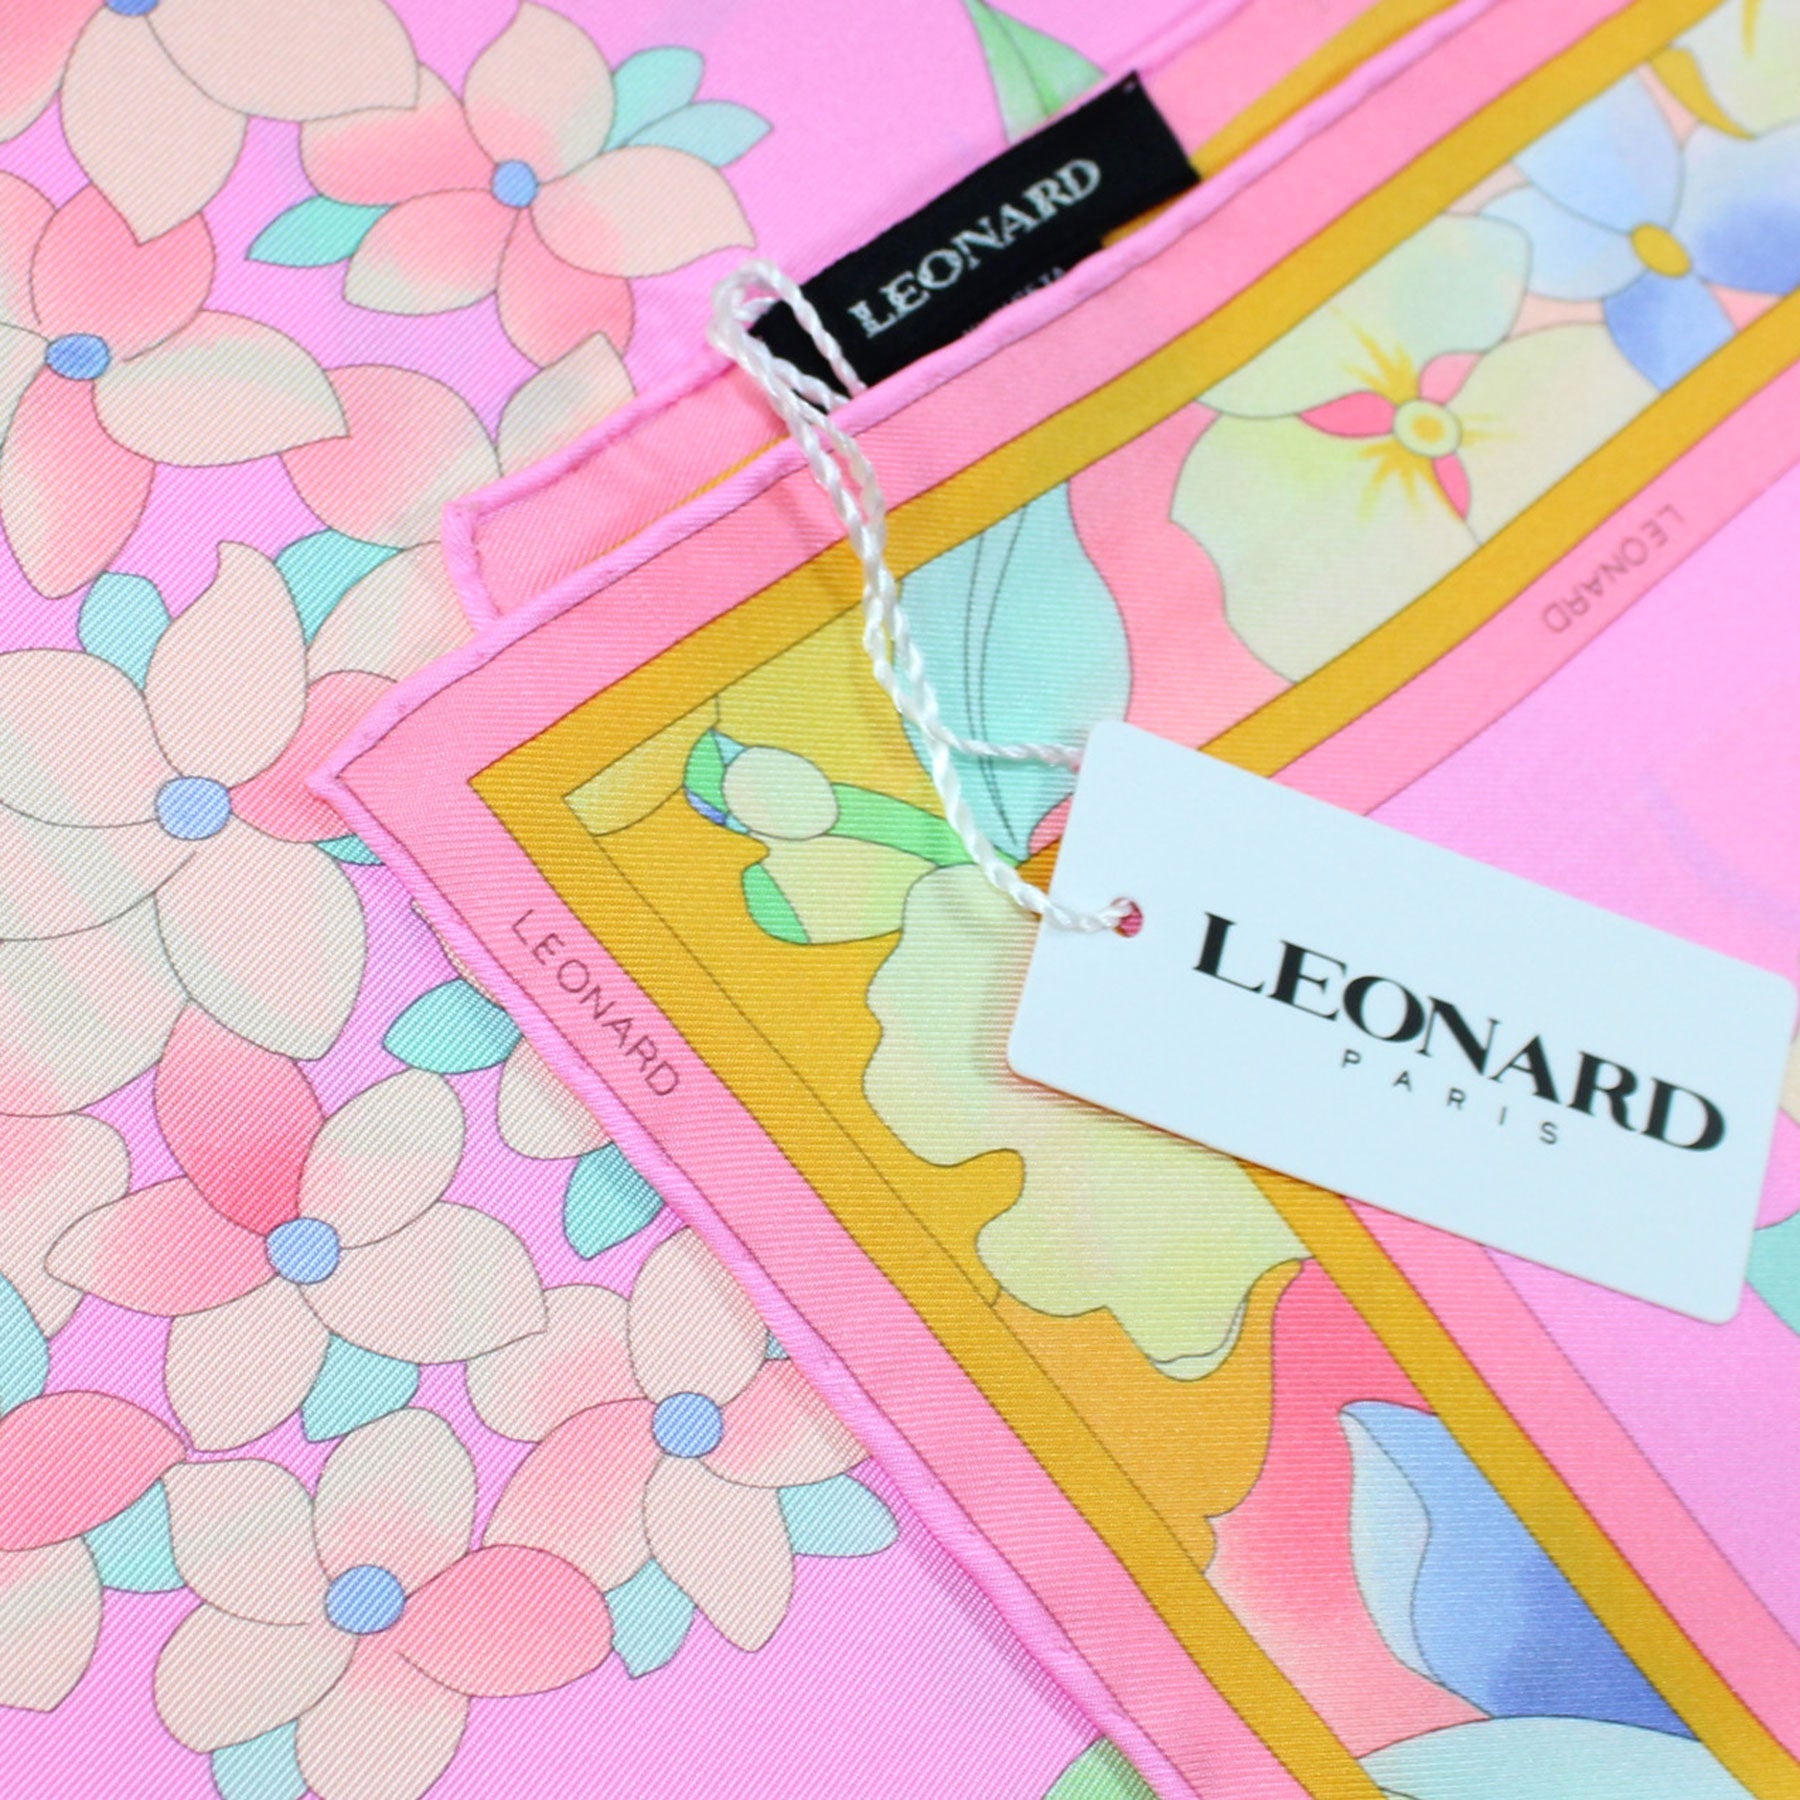 Leonard Scarf Pink Floral Design - New